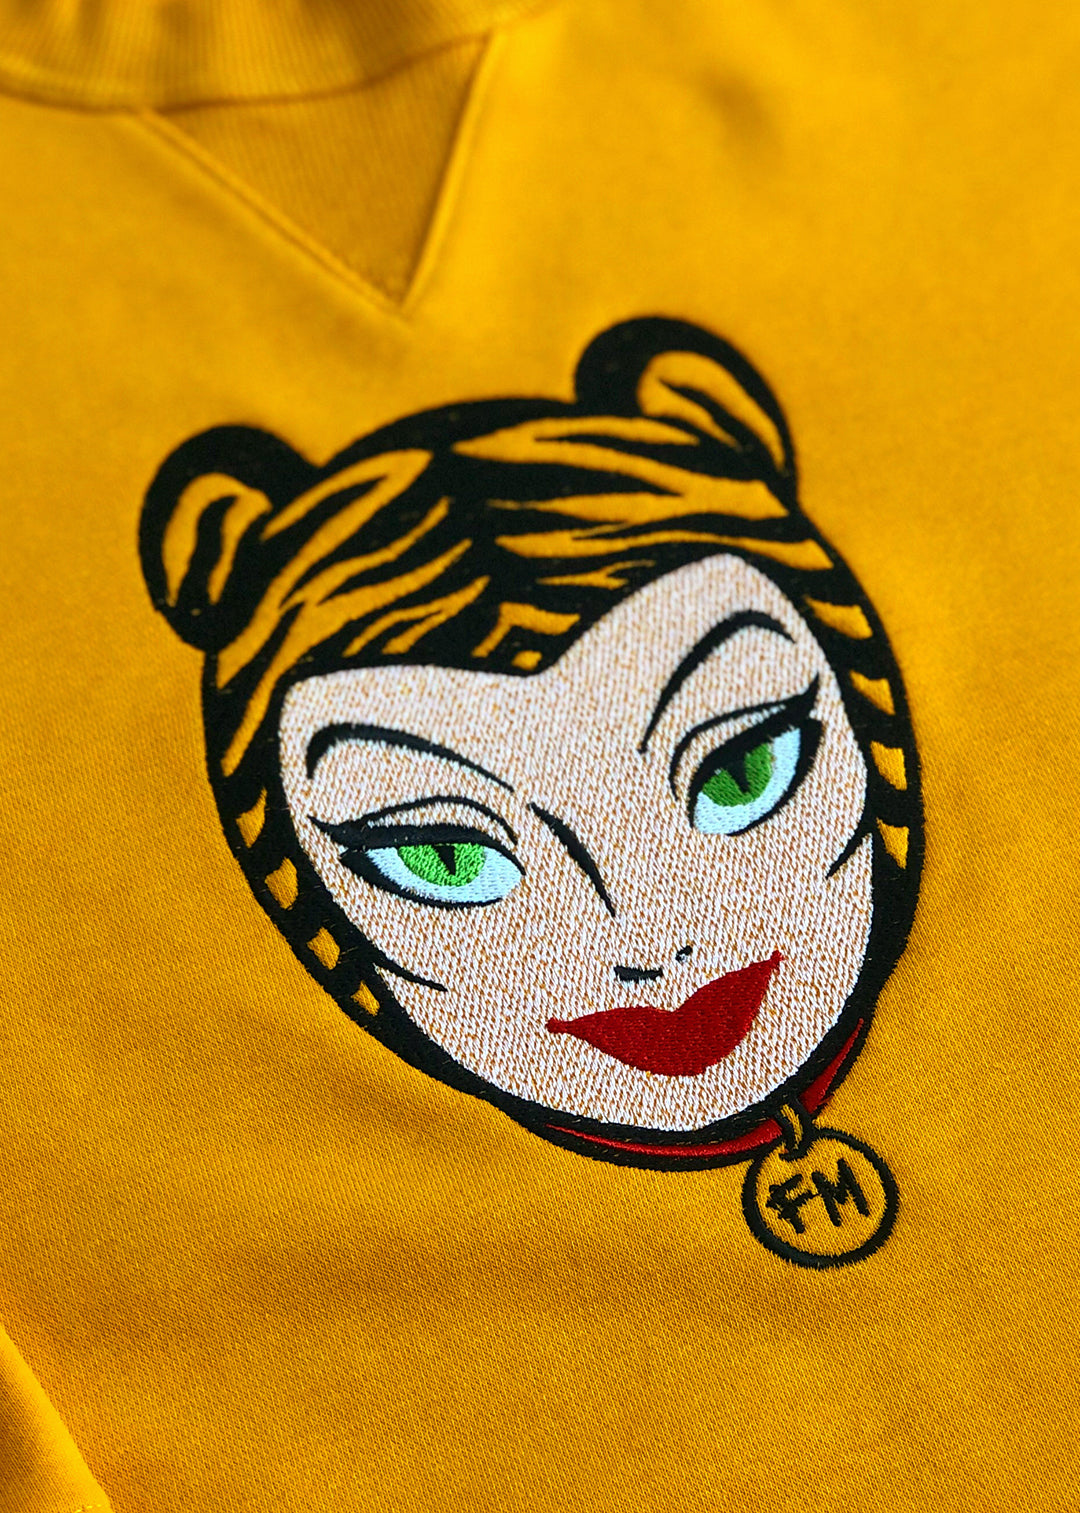 Women's Sweatshirt with Embroidery. Tigra